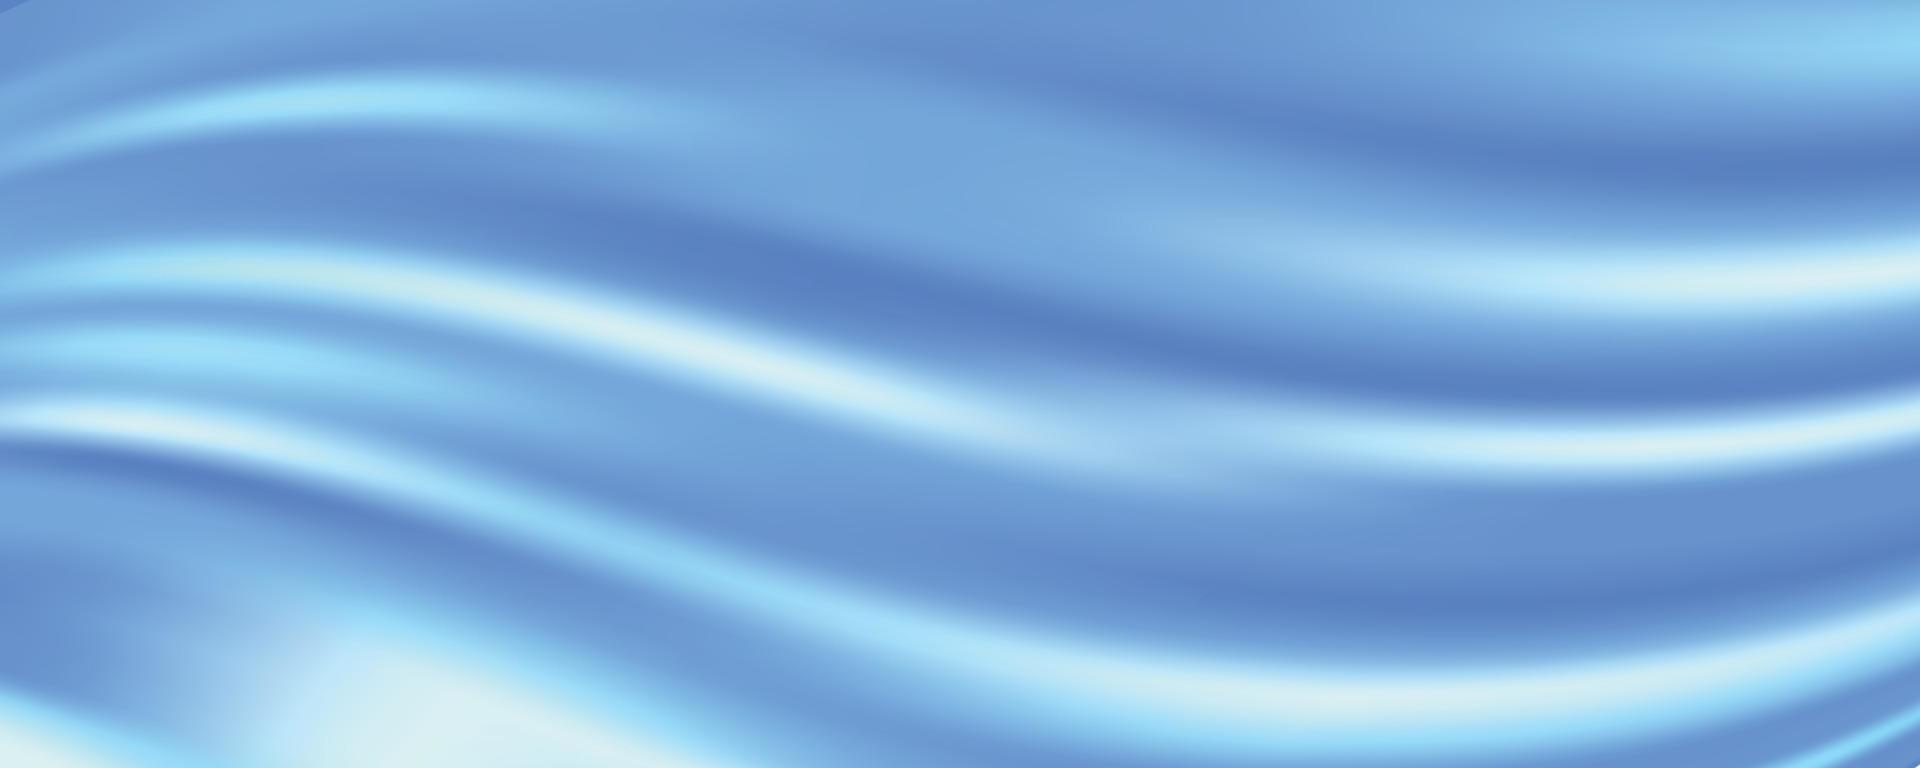 blauw zijde kleding stof abstract achtergrond, vector illustratie